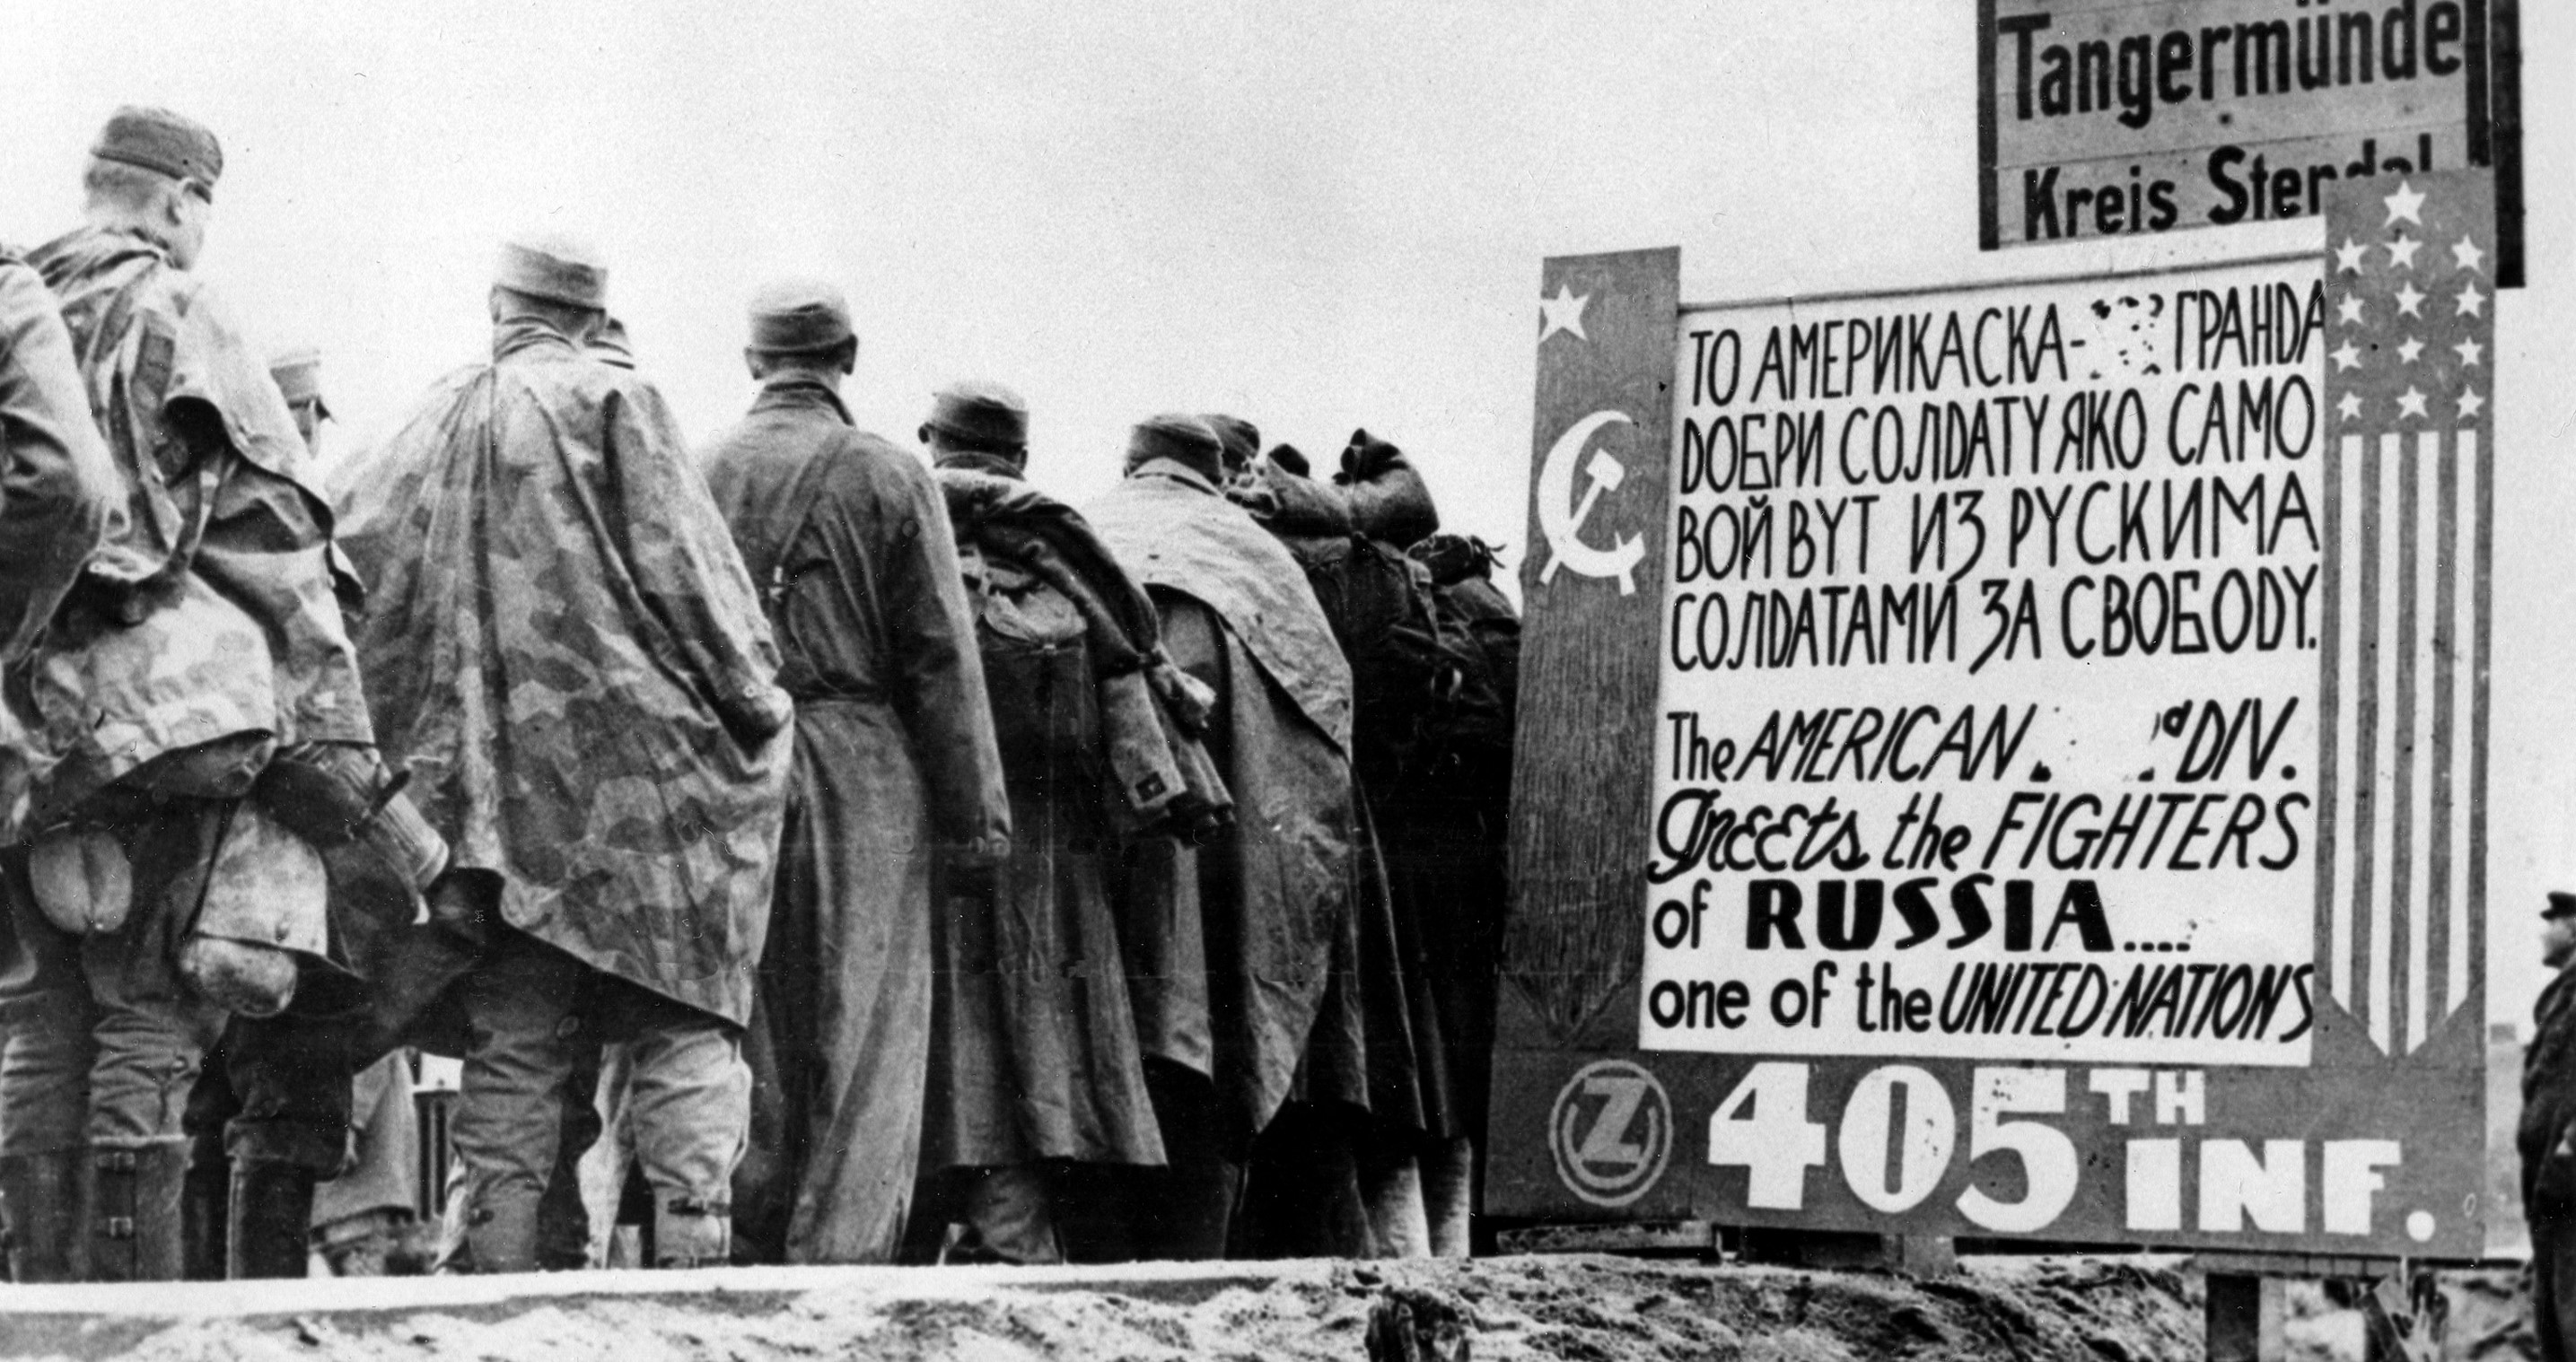 Συλληφθέντες Γερμανοί στρατιώτες περνούν μια ρωσοαγγλική πινακίδα που χτίστηκε από τους άνδρες του ένατου στρατού των ΗΠΑ στις 9 Μαΐου 1945. Η πινακίδα φέρει αριστερά την σημαία της ΕΣΣΔ  και δεξιά την αστερόεσσα σηματοδοτώντας την ένωση των συμμαχικών δυνάμεων κατά του φασισμού